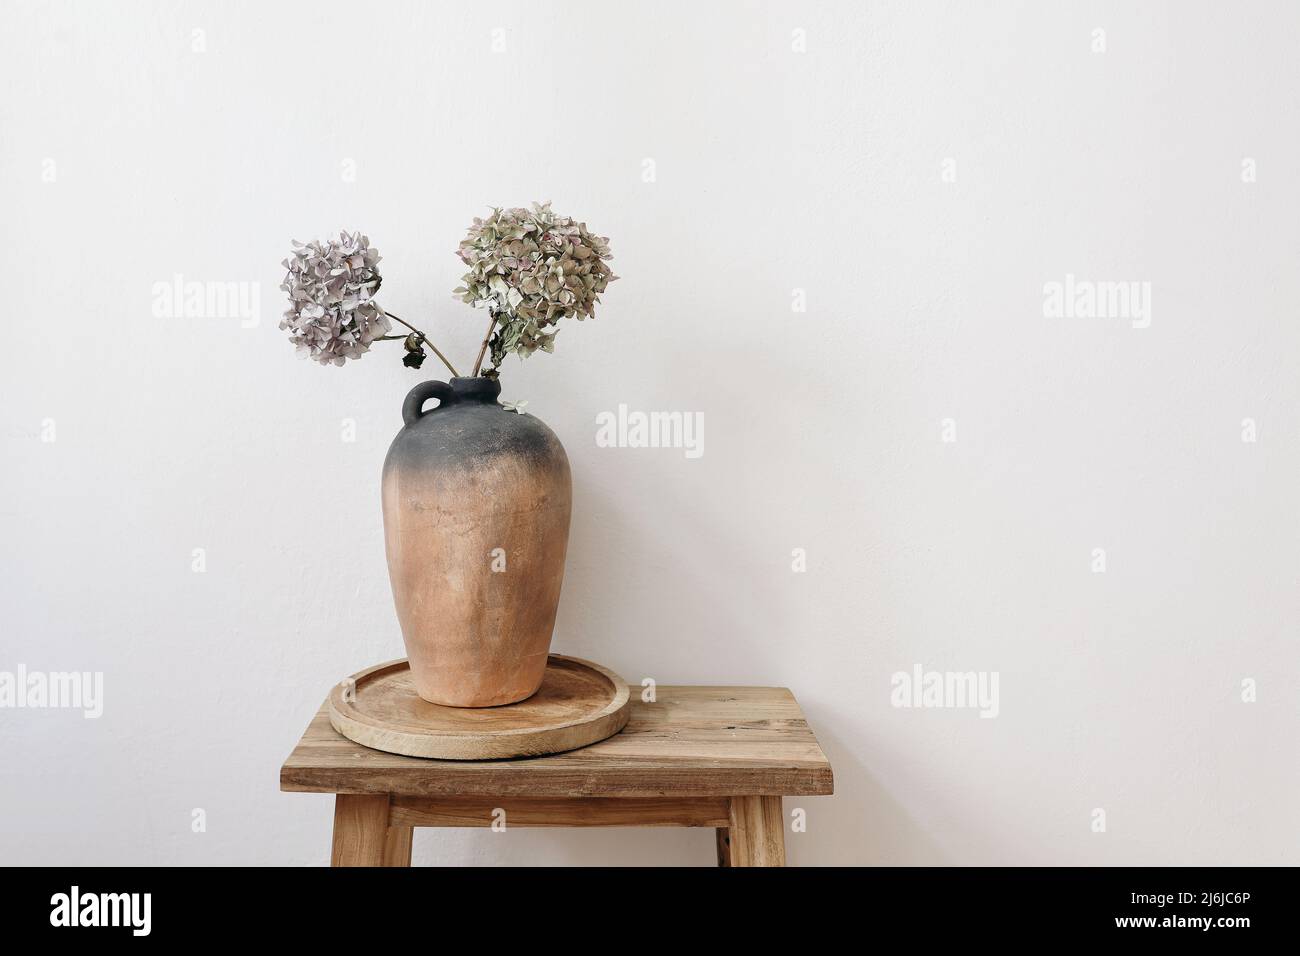 Élégant petit été, automne photo de la vie. Vase rustique en argile, pichet avec fleurs d'hortensia sur un vieux tabouret en bois, table de console. Mur blanc Banque D'Images